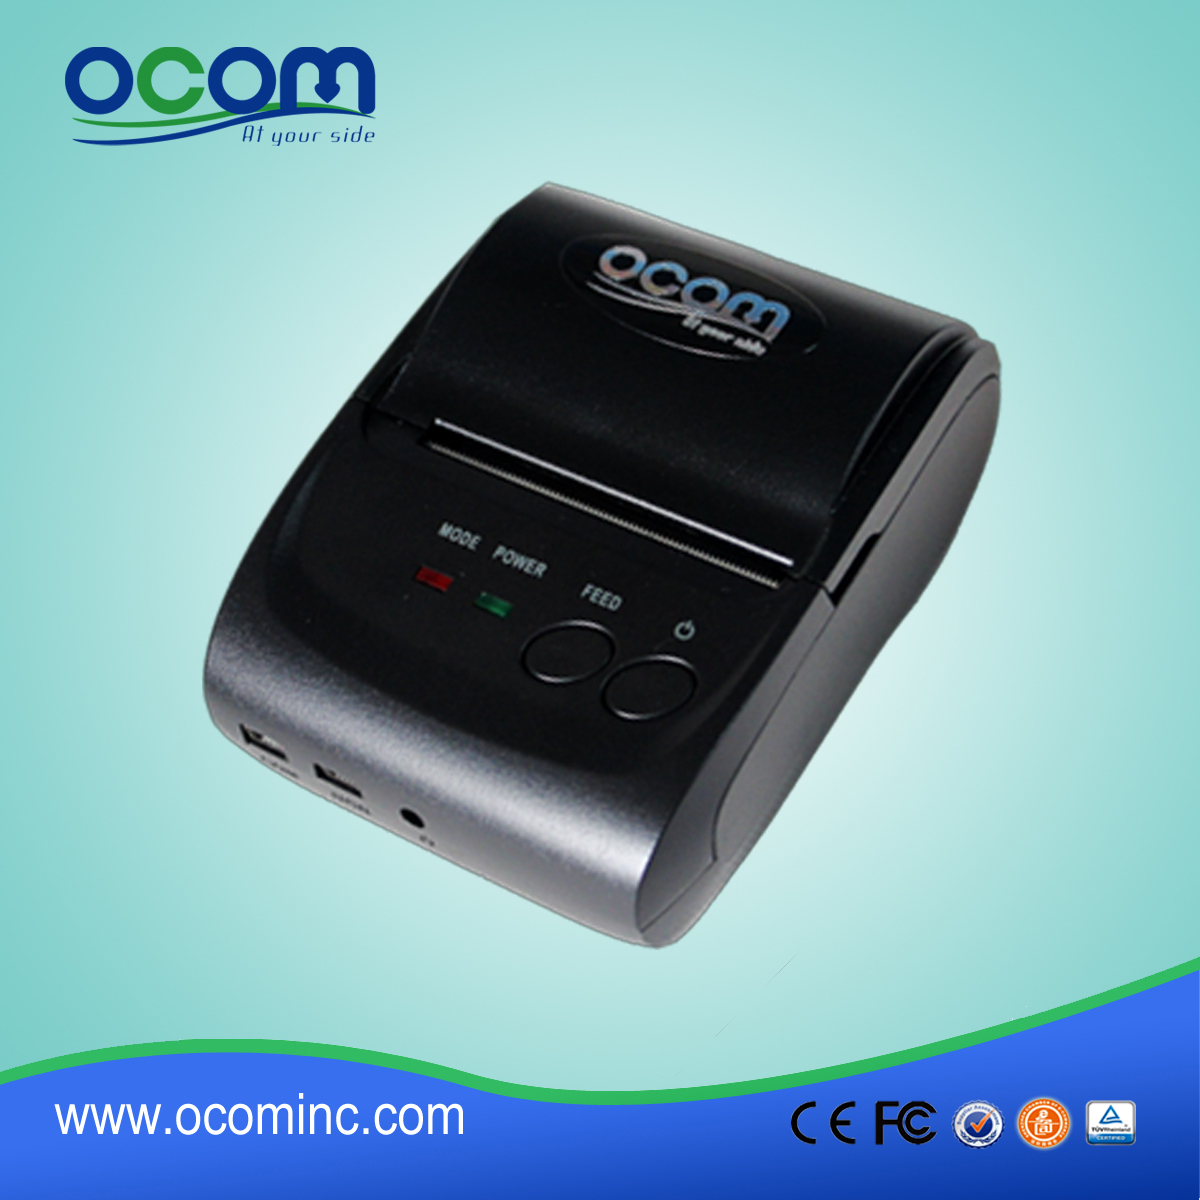 OCPP-M05: Хорошее качество! Новый приход портативный Android Bluetooth чековый принтер